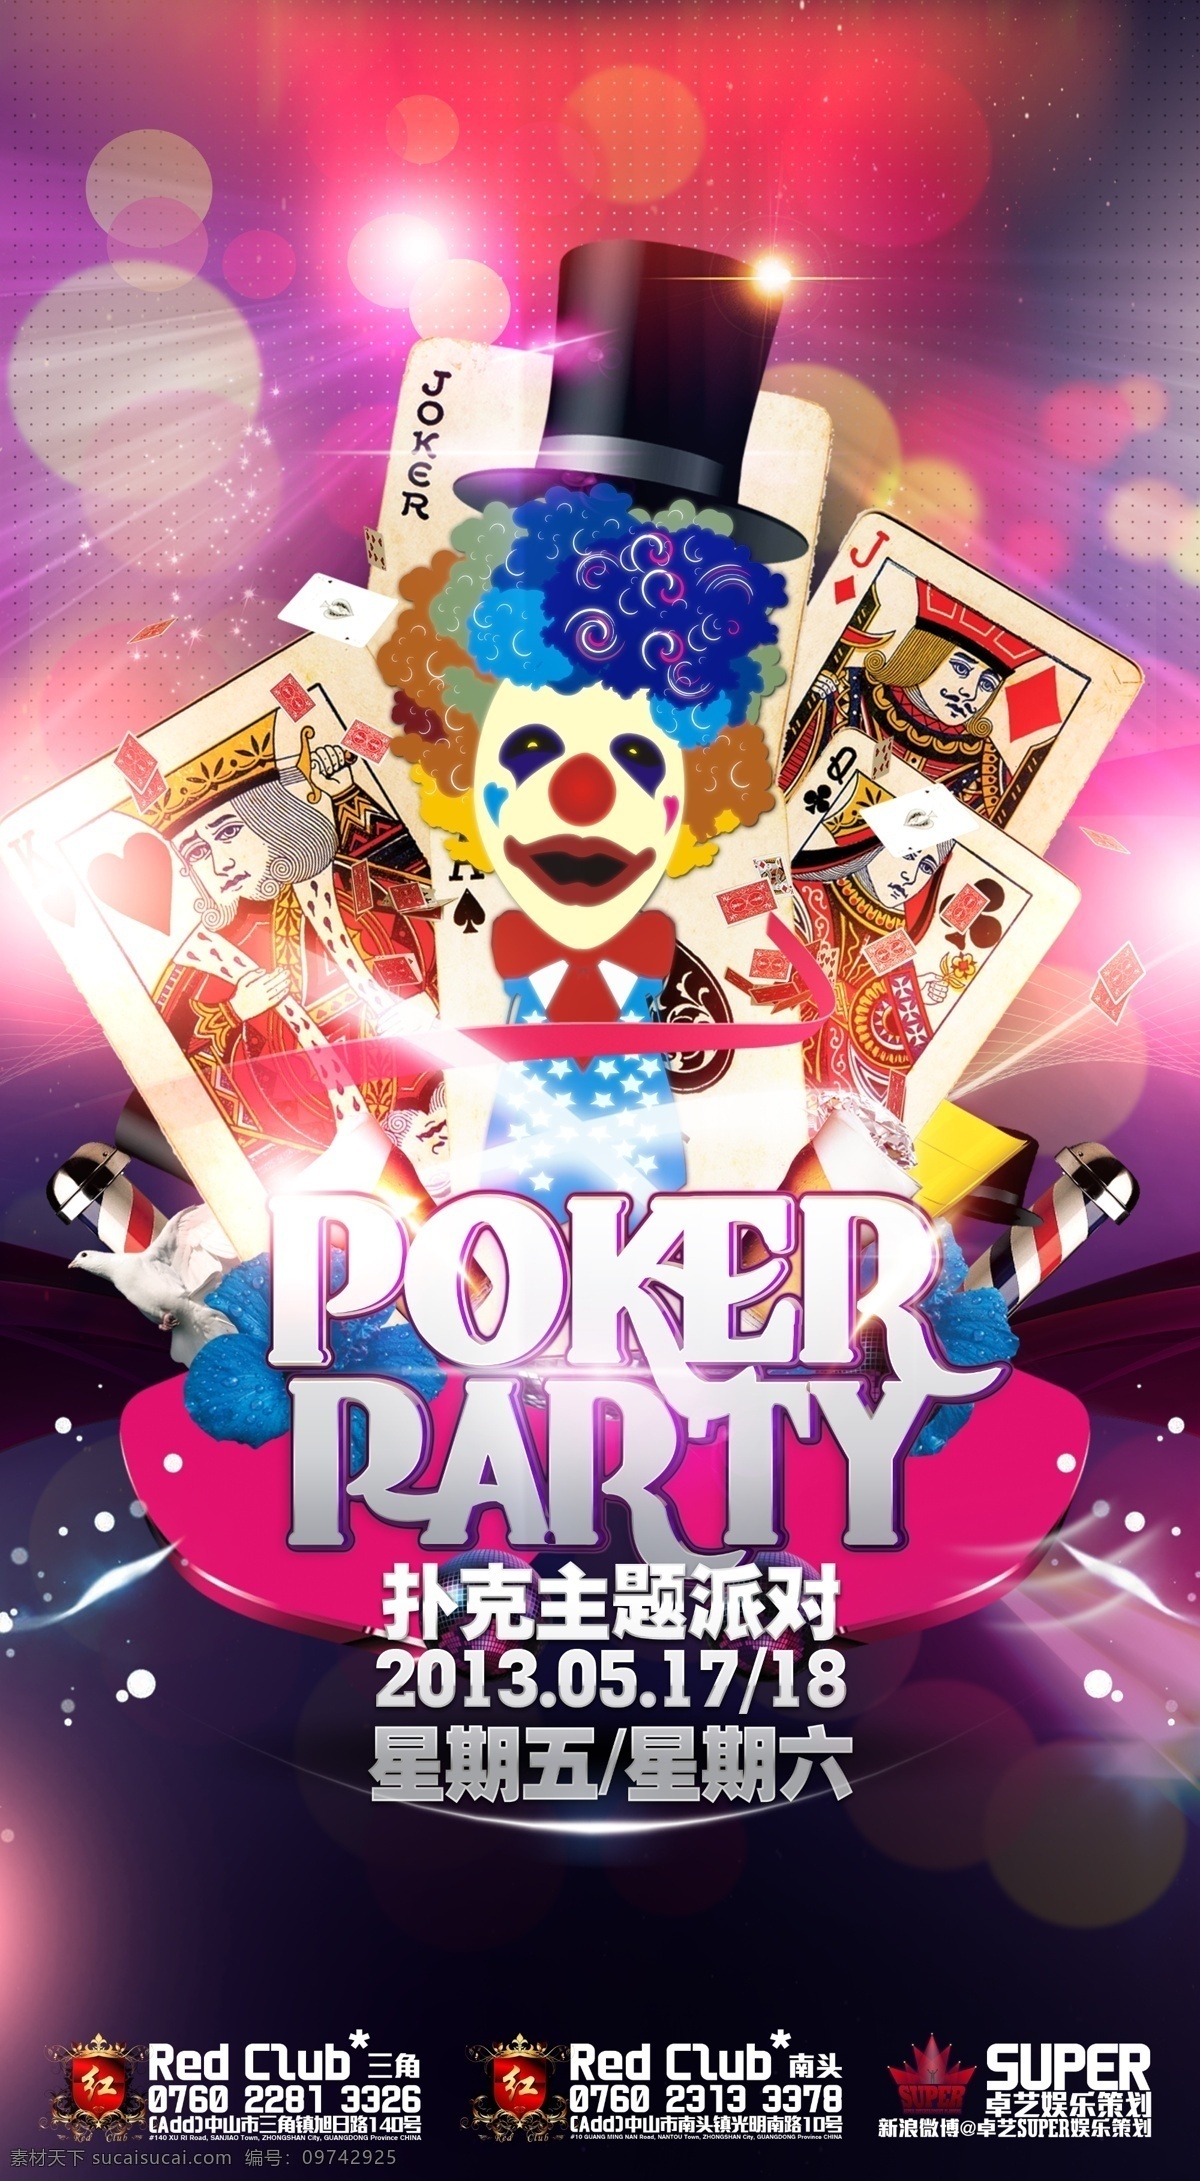 扑克 派对 ktv 光 华丽 酒吧 狂欢 扑克牌 奢华 模板下载 扑克派对 夜店 小丑 海报 宴会 音乐 音乐节 现场 跳舞 其他海报设计